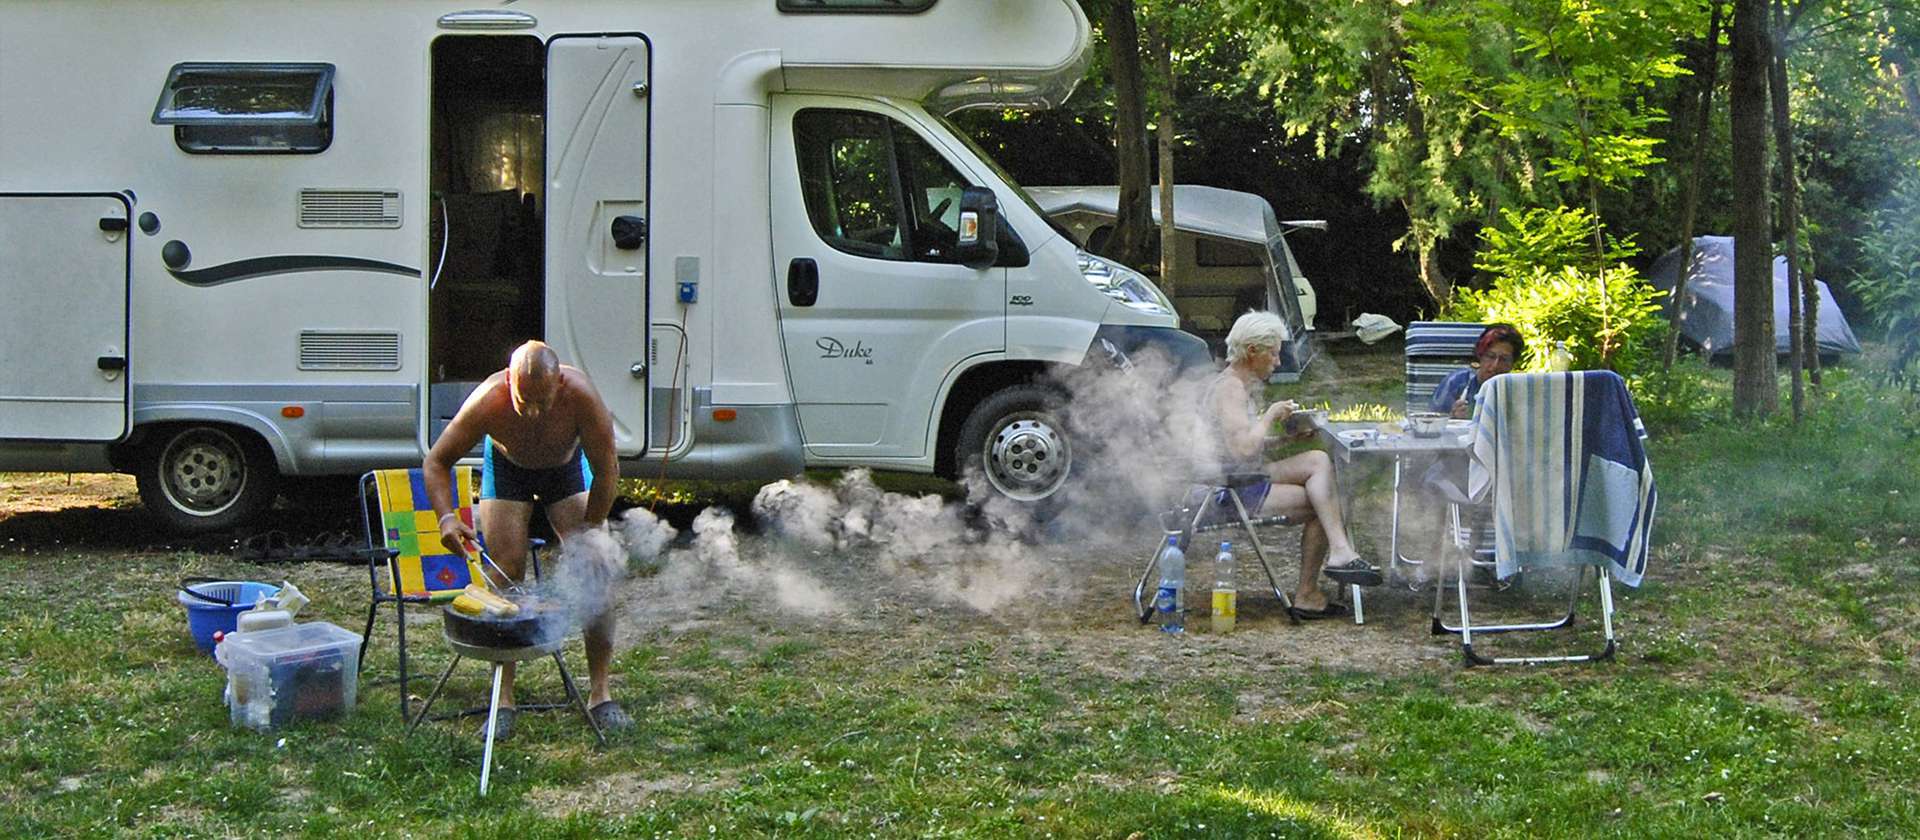 camping-mit-hund-sabbiadoro-italien-maxi-stellplatz-grillen